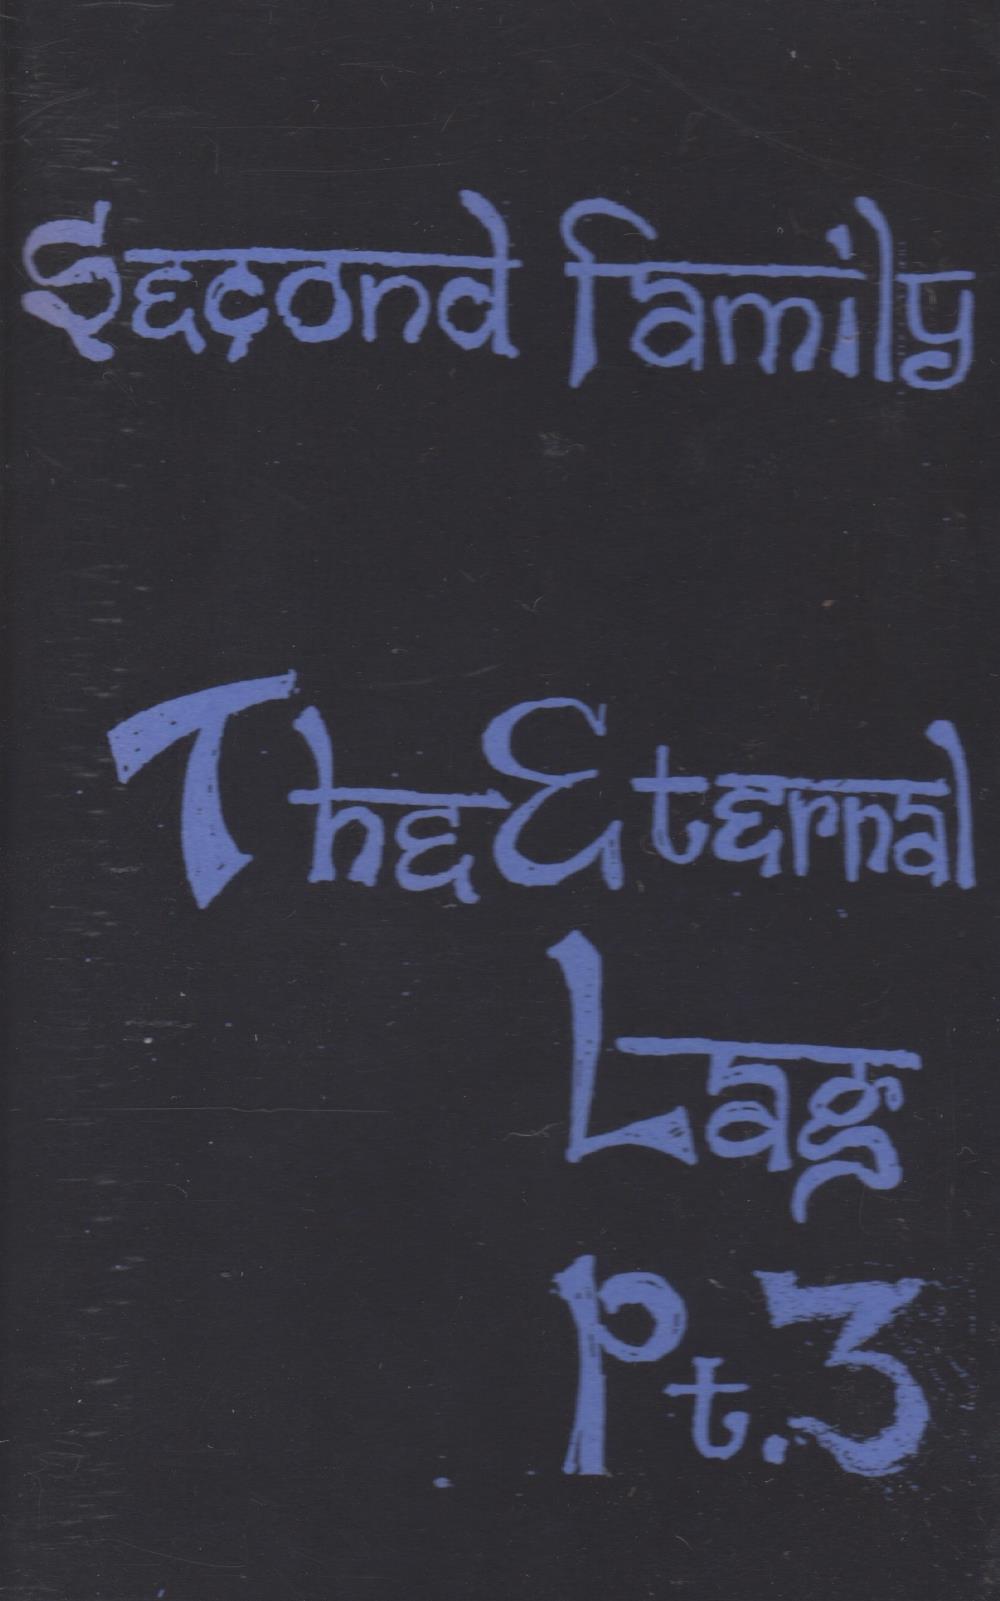 Second Family Band - The Eternal Lag Pt. 3 CD (album) cover